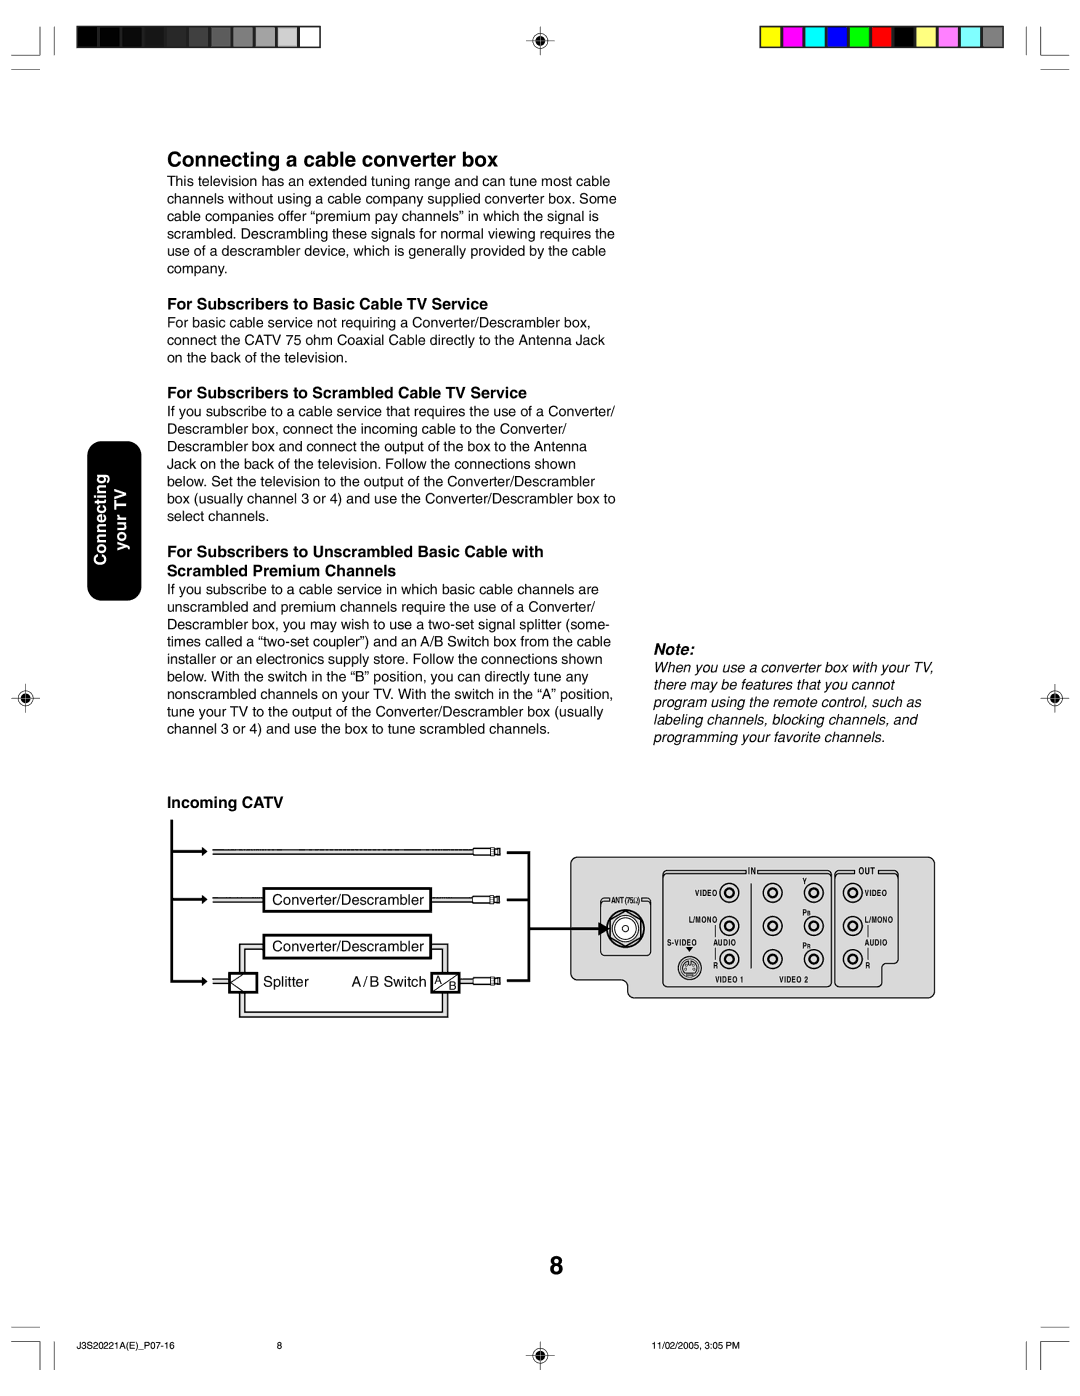 Toshiba 27A45 appendix Connecting a cable converter box, Converter/Descrambler Splitter Switch a B 